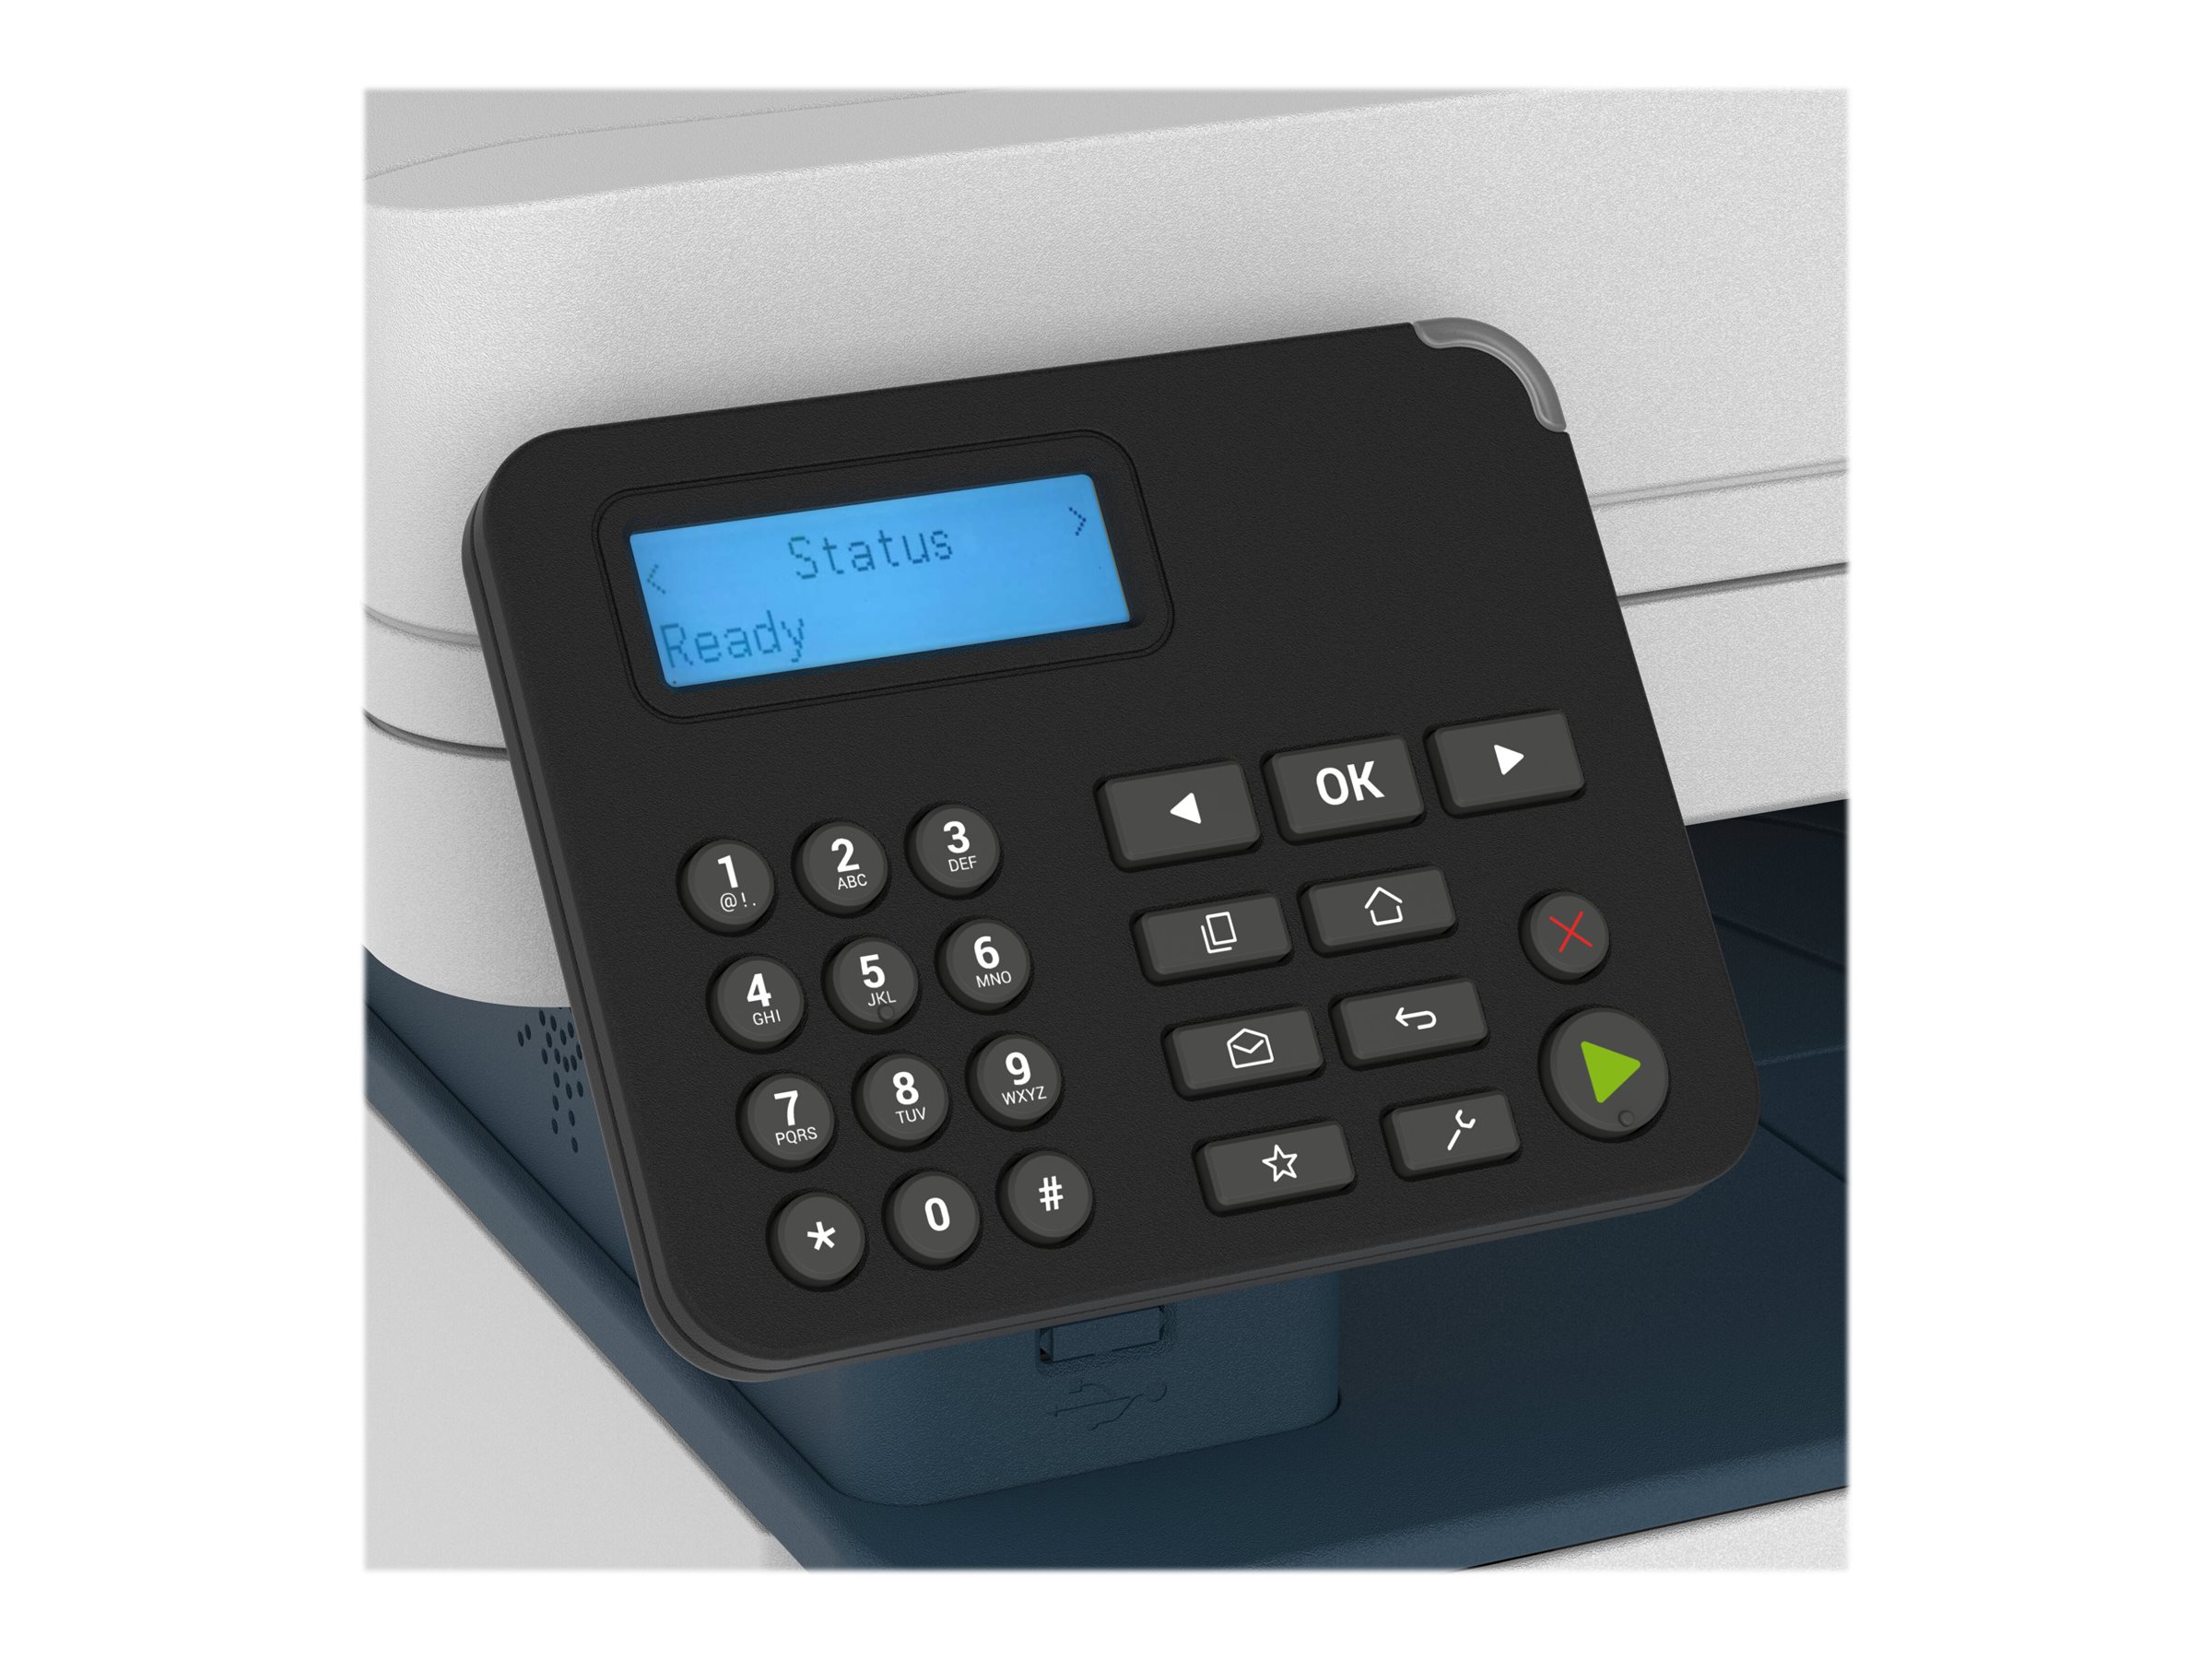 Xerox B225 - Imprimante multifonctions - Noir et blanc - laser - A4/Legal (support) - jusqu'à 34 ppm (impression) - 250 feuilles - USB 2.0, LAN, Wi-Fi(n), hôte USB 2.0 - B225V_DNI - Imprimantes multifonctions